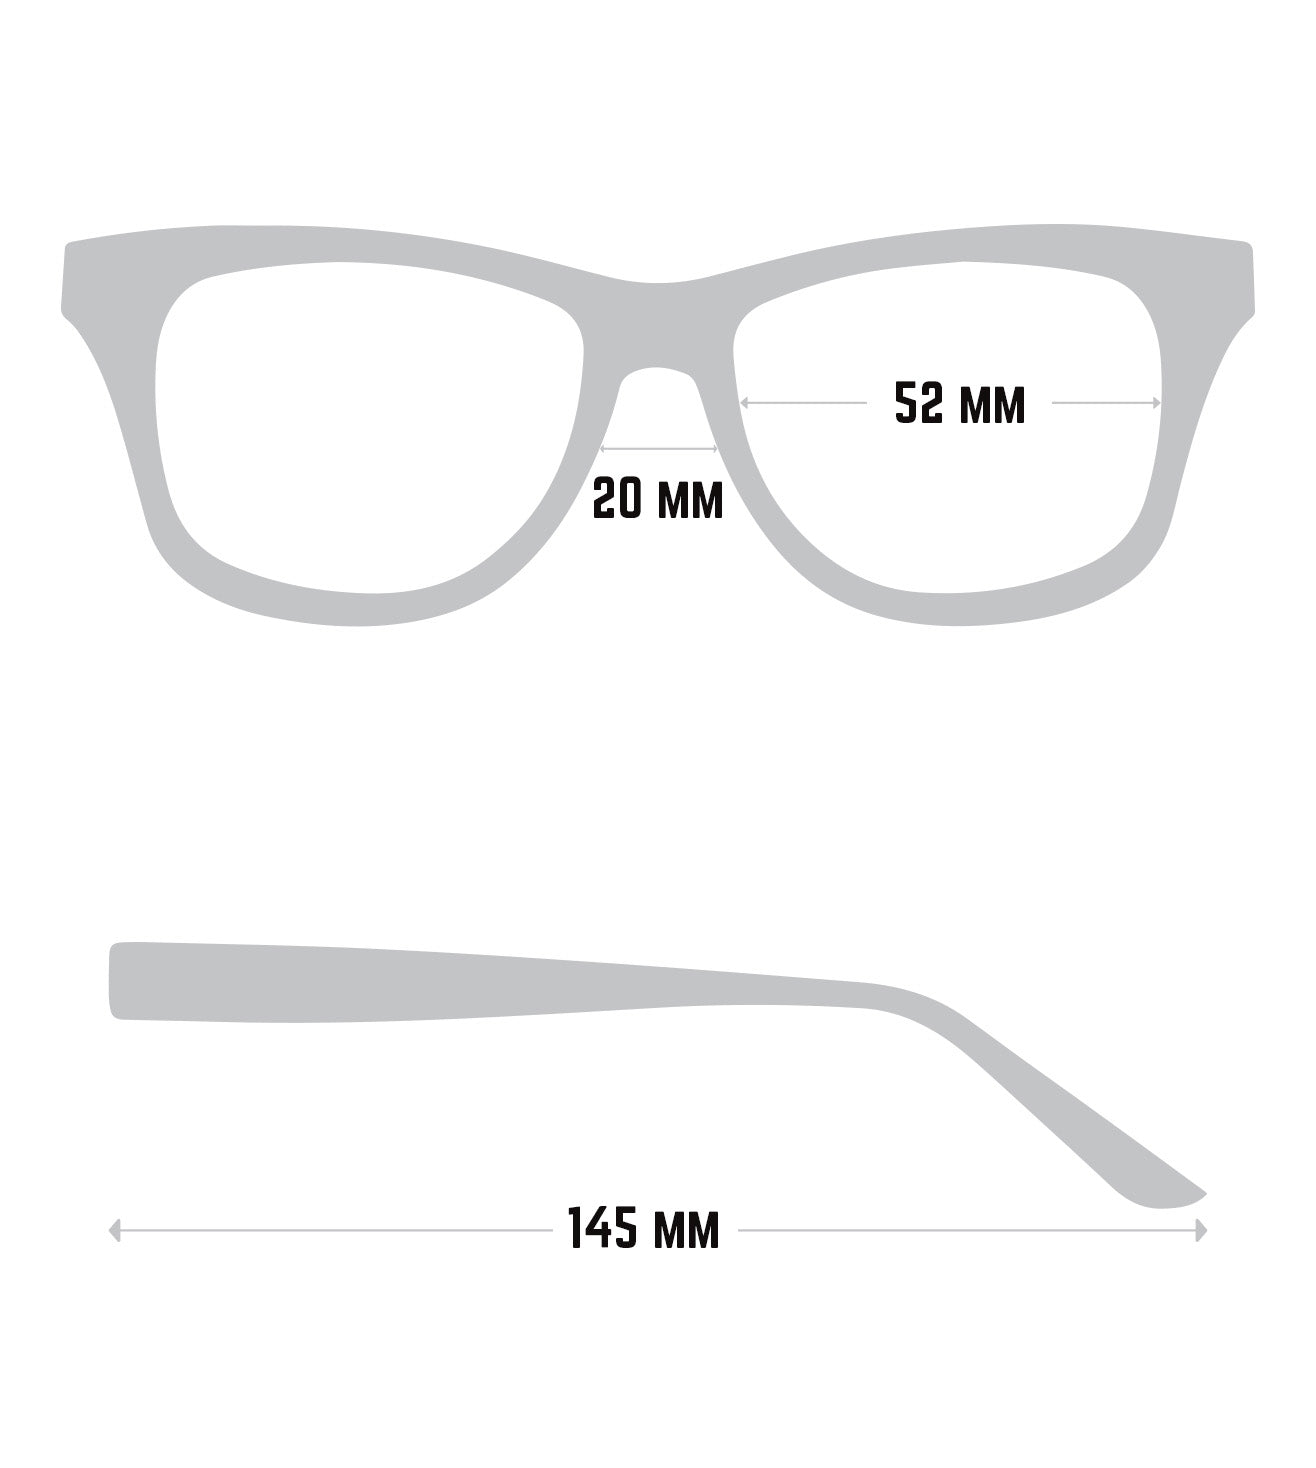 Montblanc Men's Grey Rectangular Optical Frame